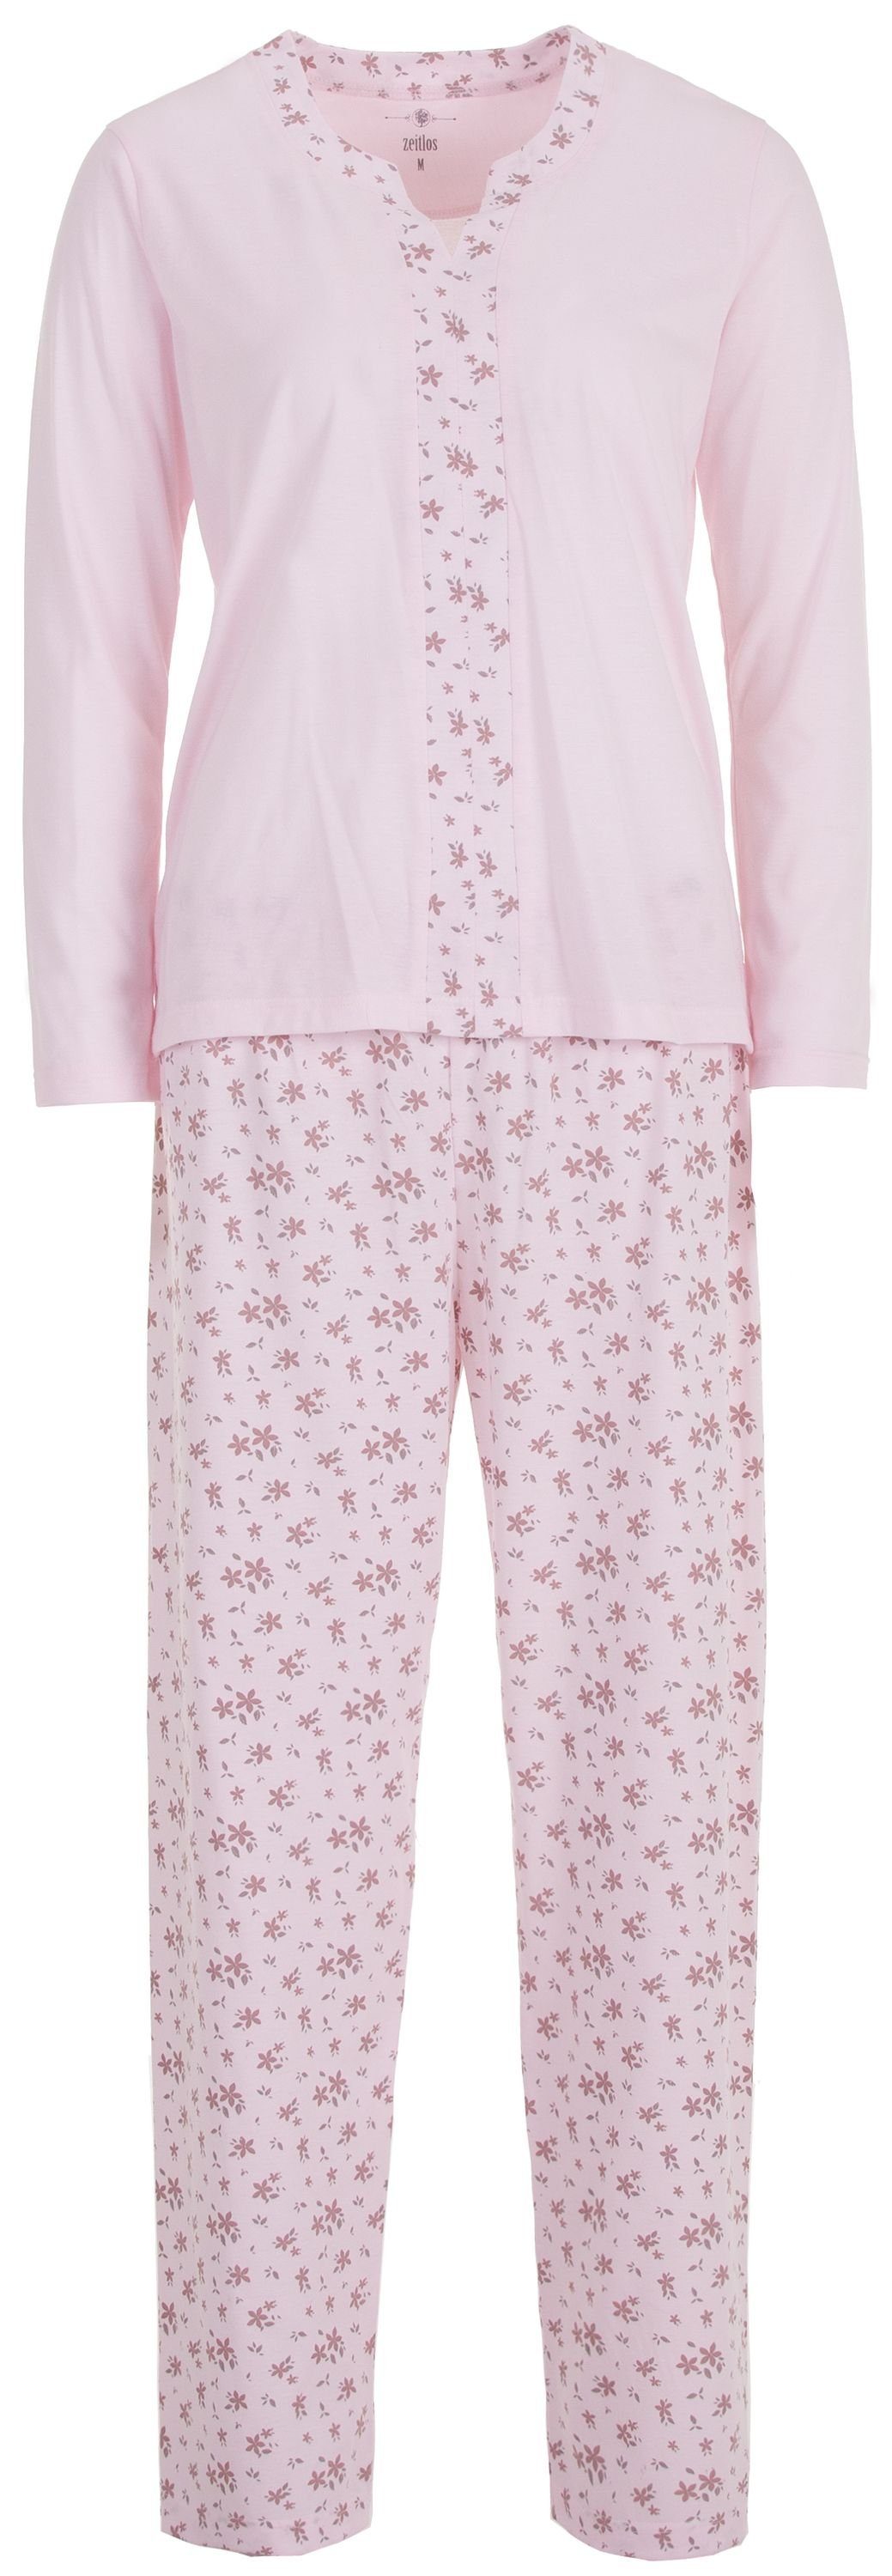 zeitlos Schlafanzug »zeitlos Schlafanzug Pyjama Damen Langarm Blüte Oberteil  Hose« online kaufen | OTTO